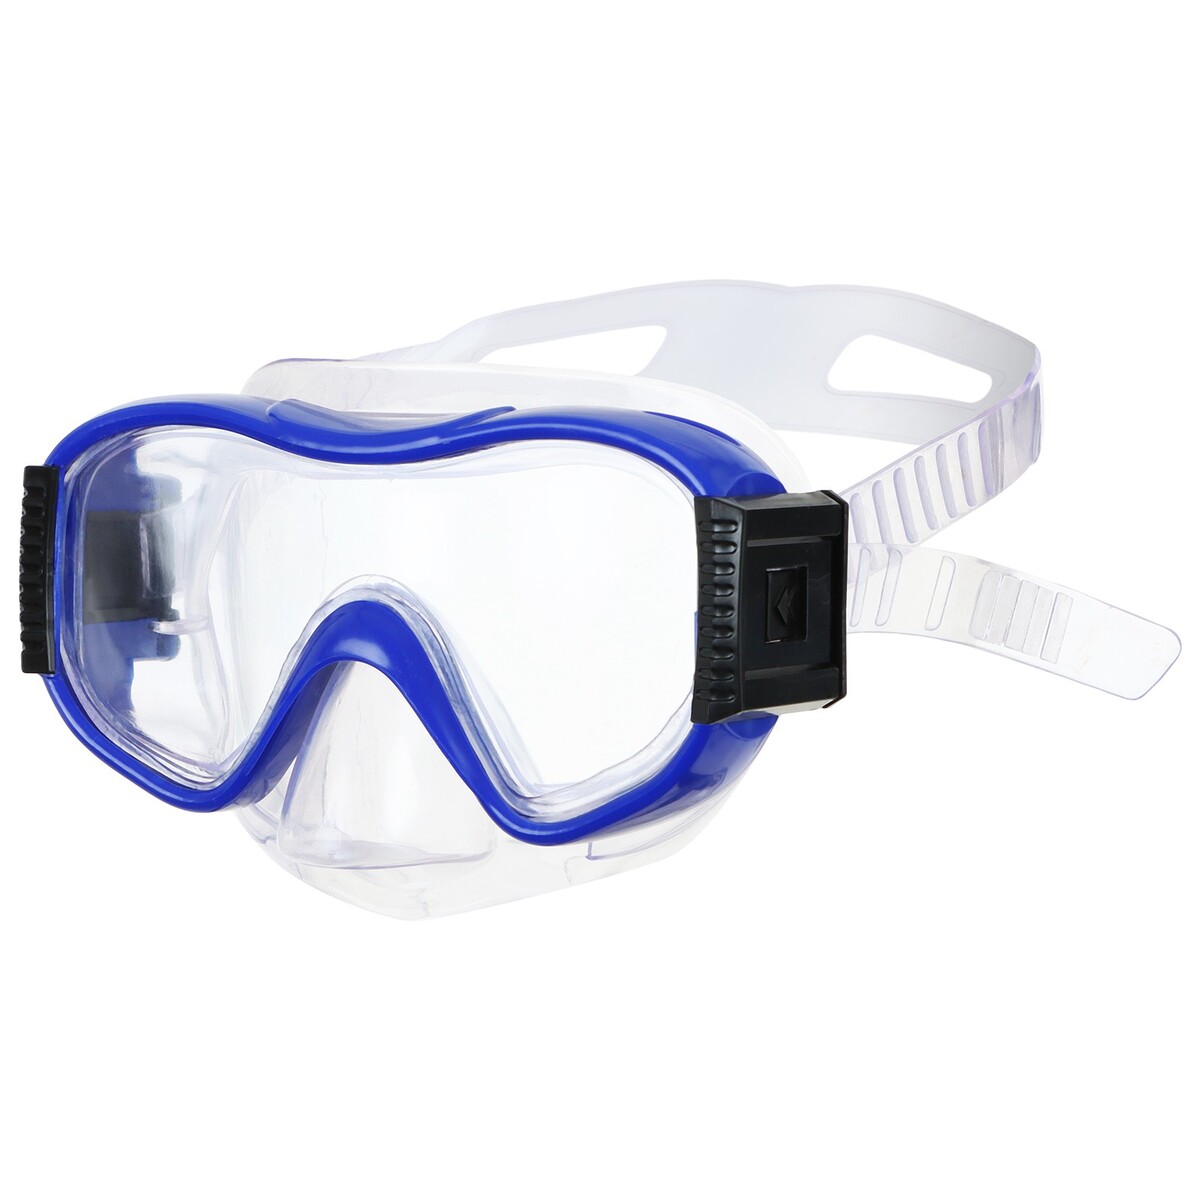 Маска для плавания детская onlytop, цвет синий маска для плавания atemi 428 силикон синий